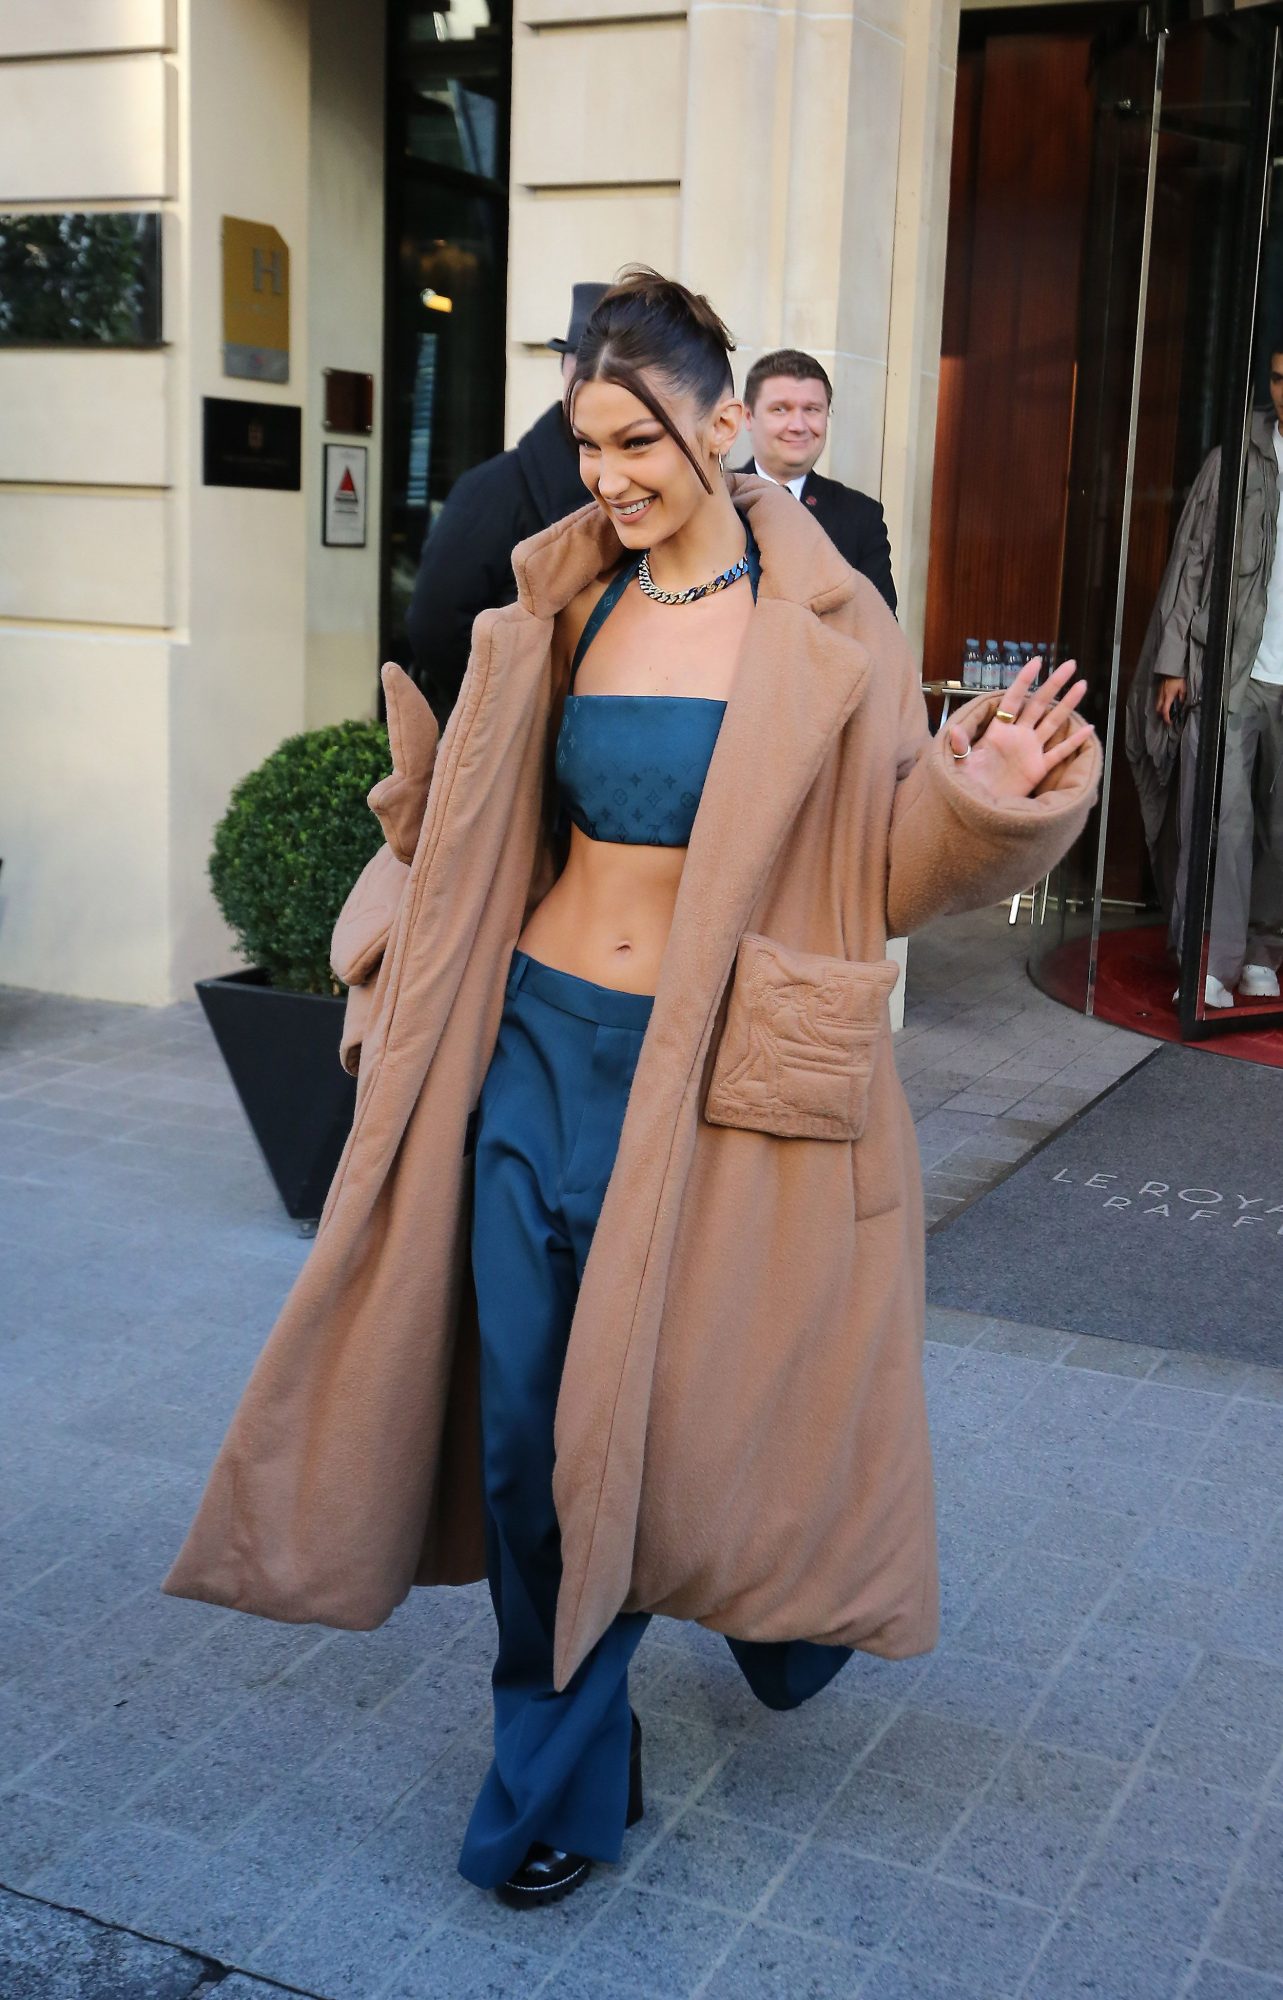 Bella Hadid at Louis Vuitton Fashion Week Spring '20 Show